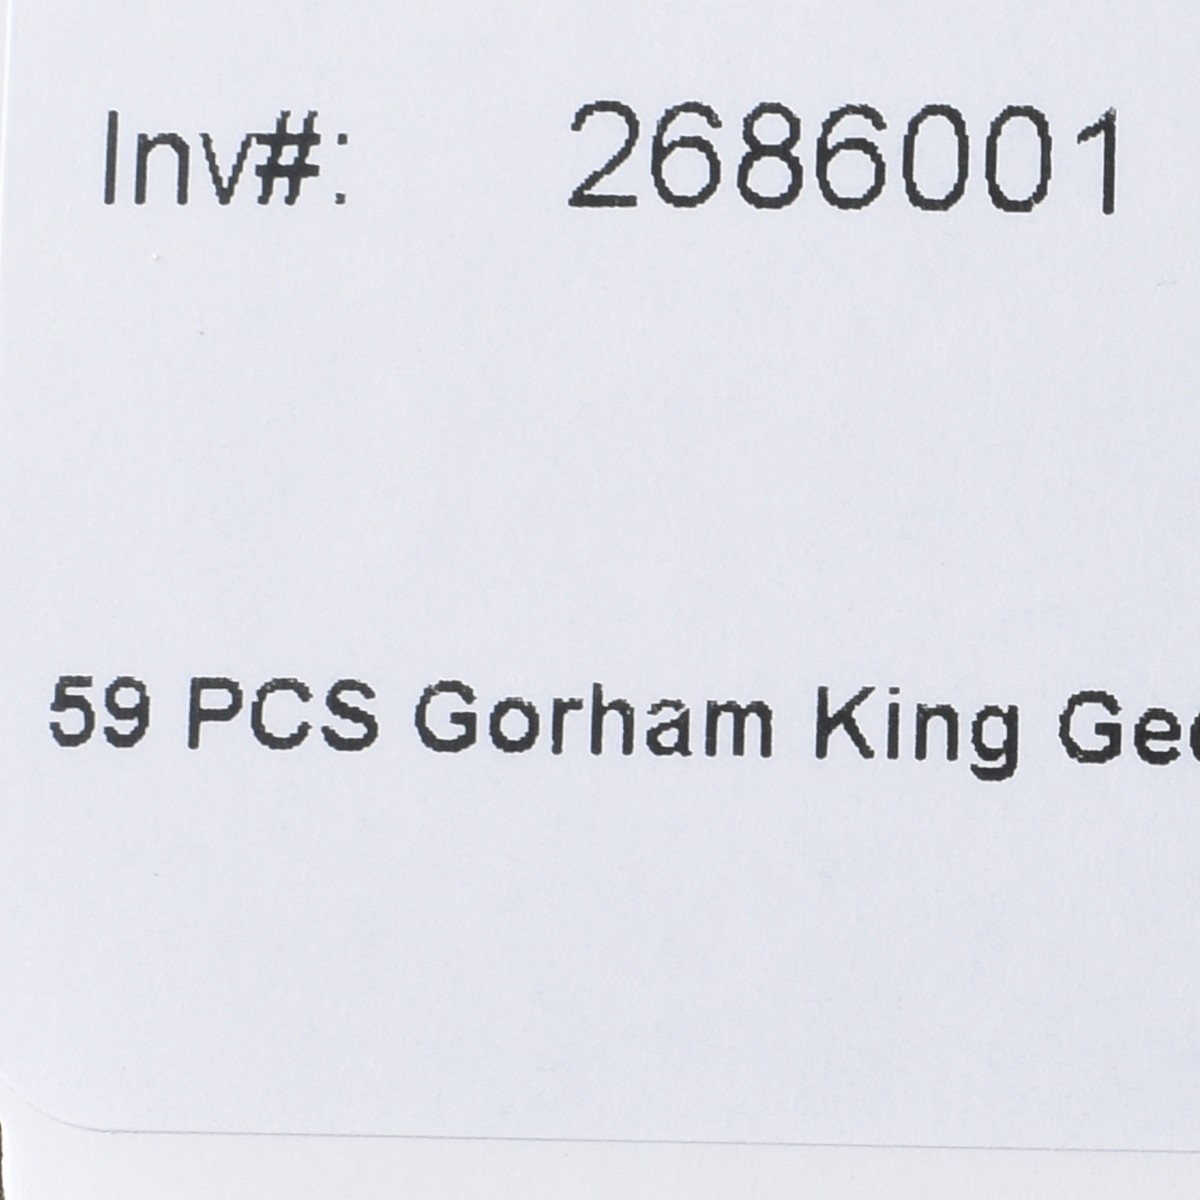 59 PCS Gorham King Edward Flatware